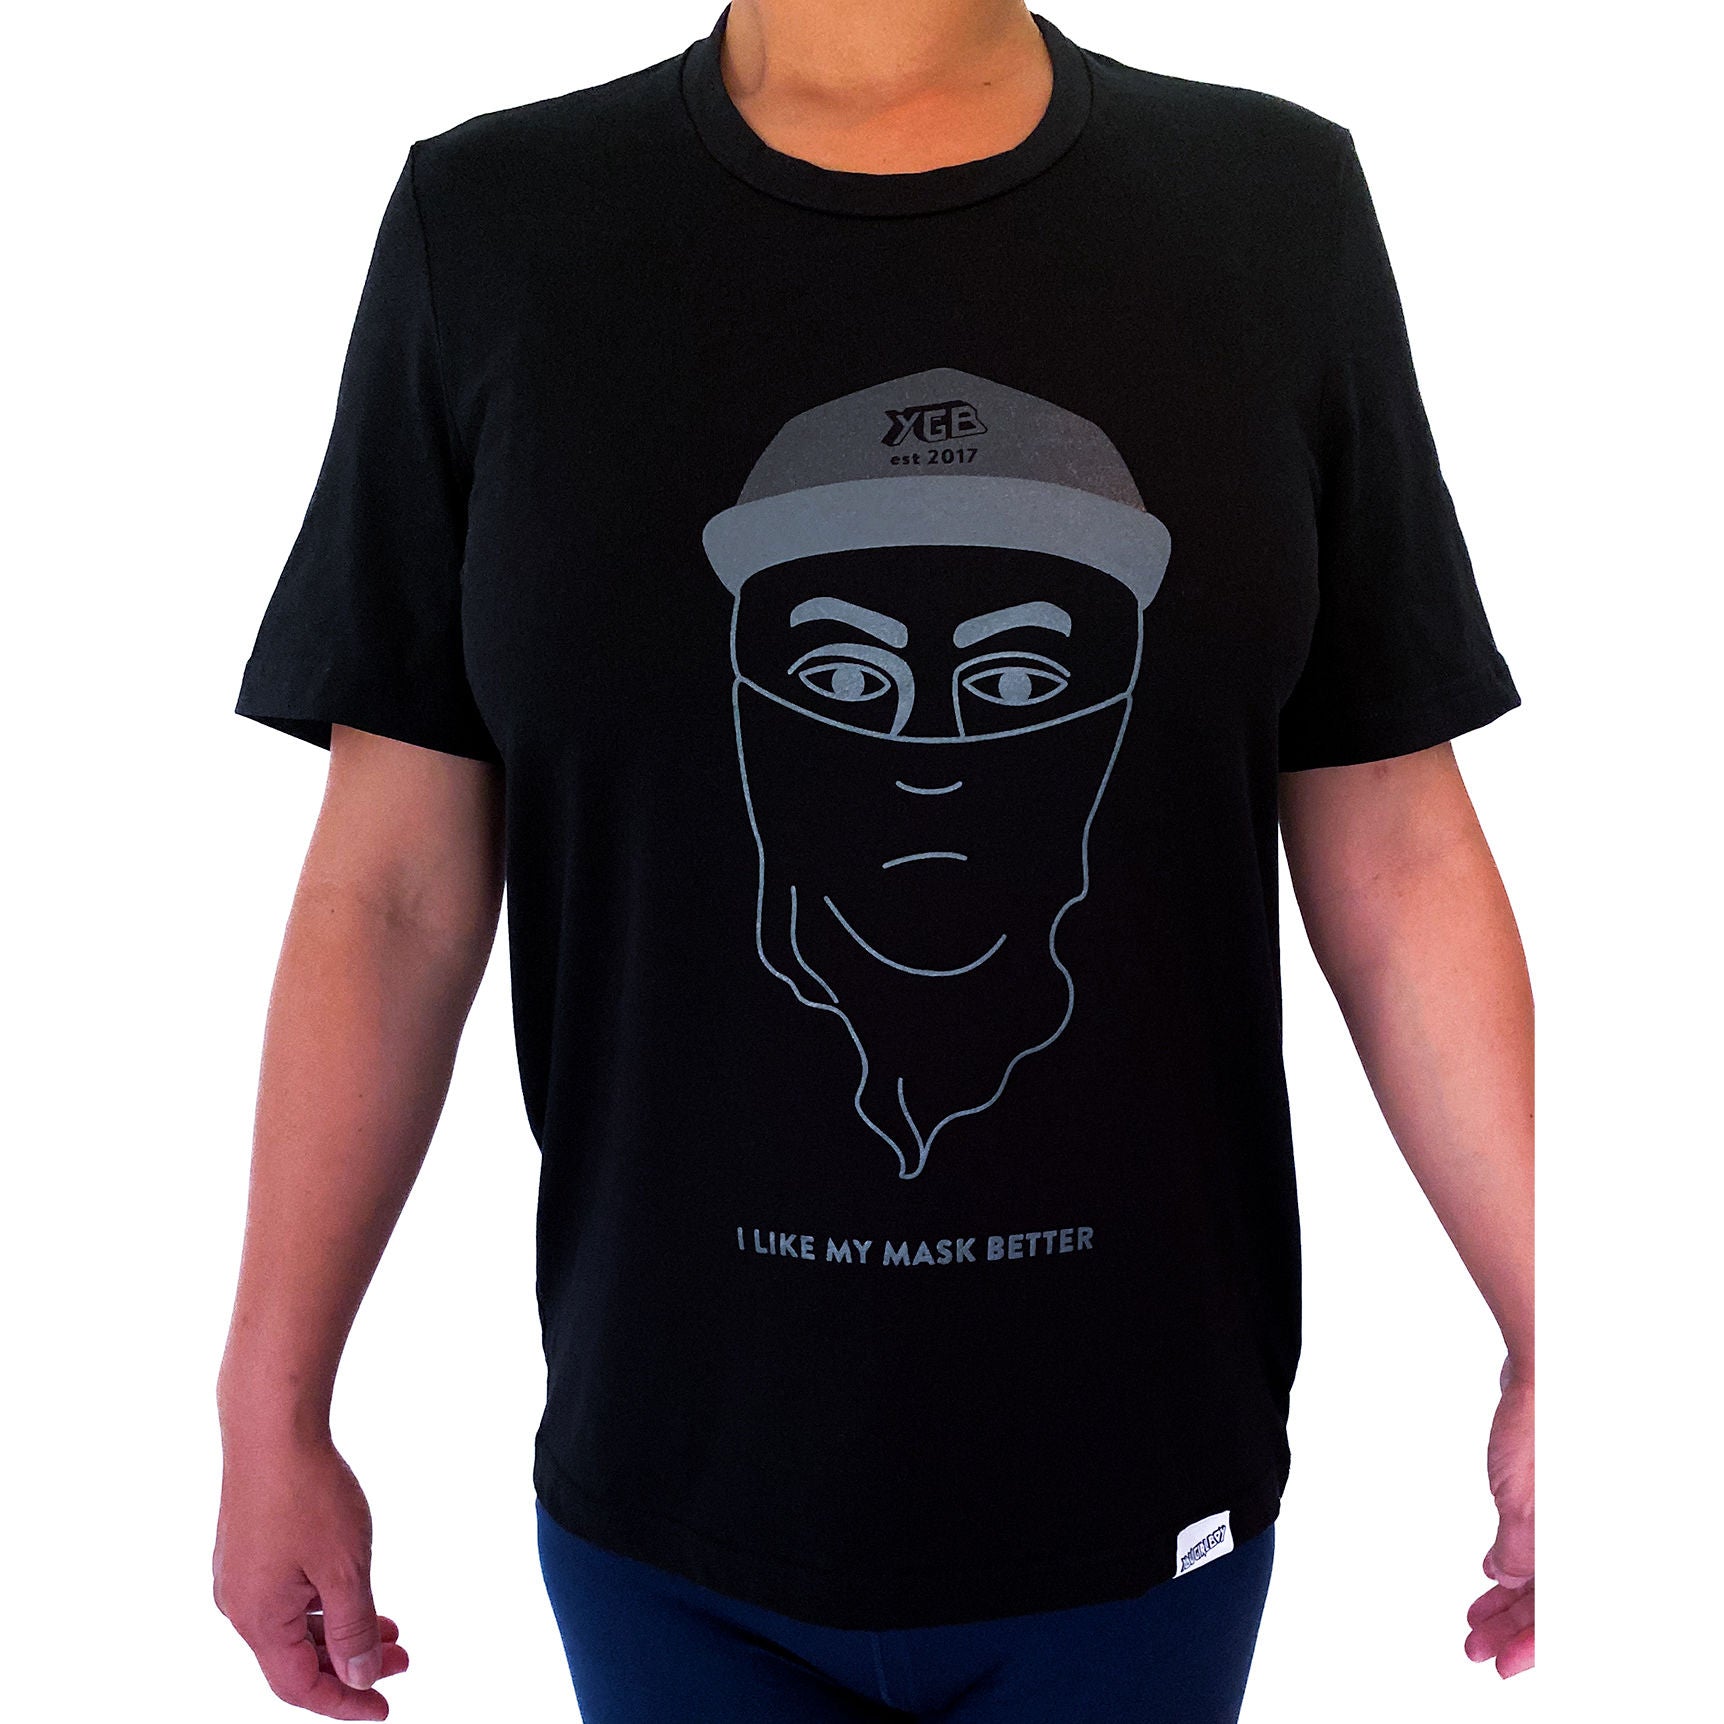 Ethical organic unisex t-shirt Black Crew neck Mask